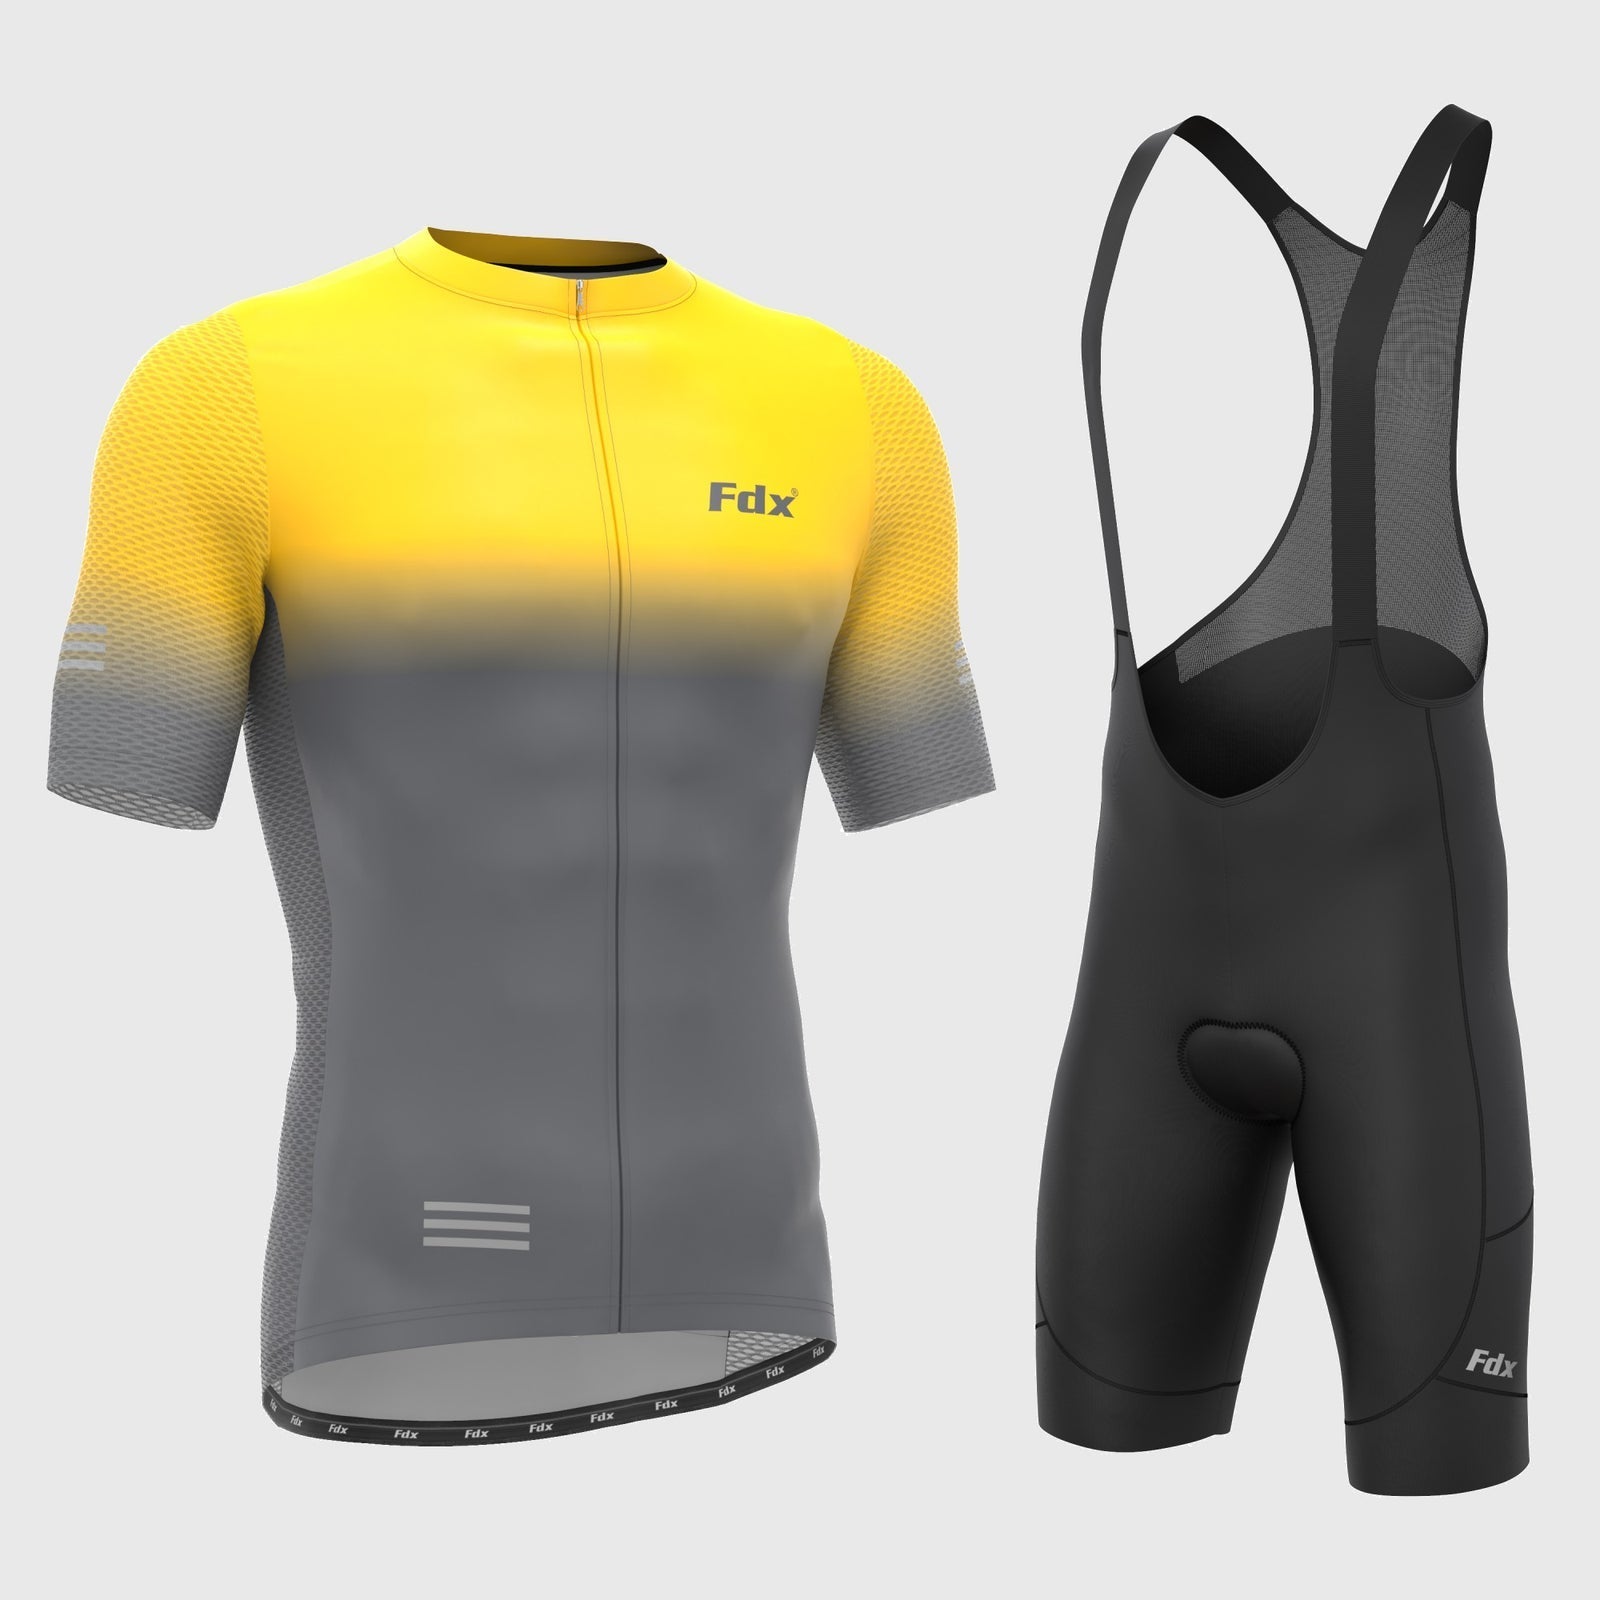 Fdx Men's Set Duo Yellow / Grey Short Sleeve Summer Cycling Jersey & Cargo Bib Shorts